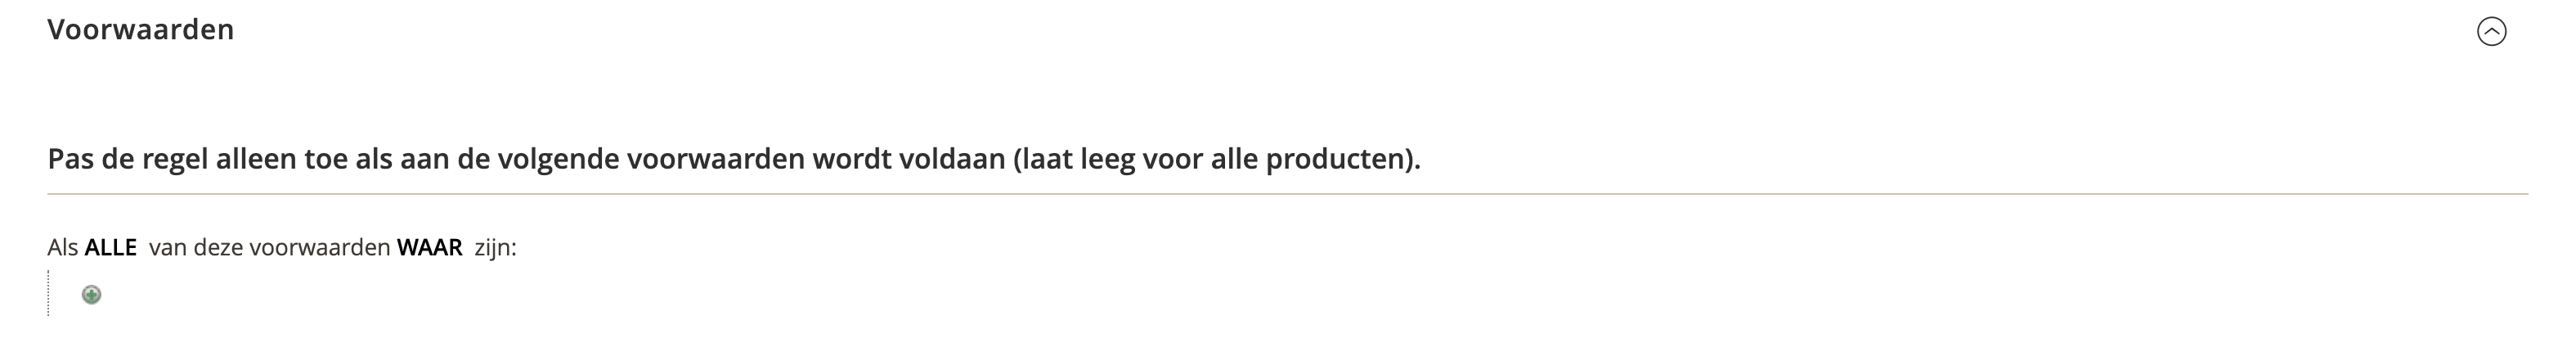 Winkelwagen_Prijsregels